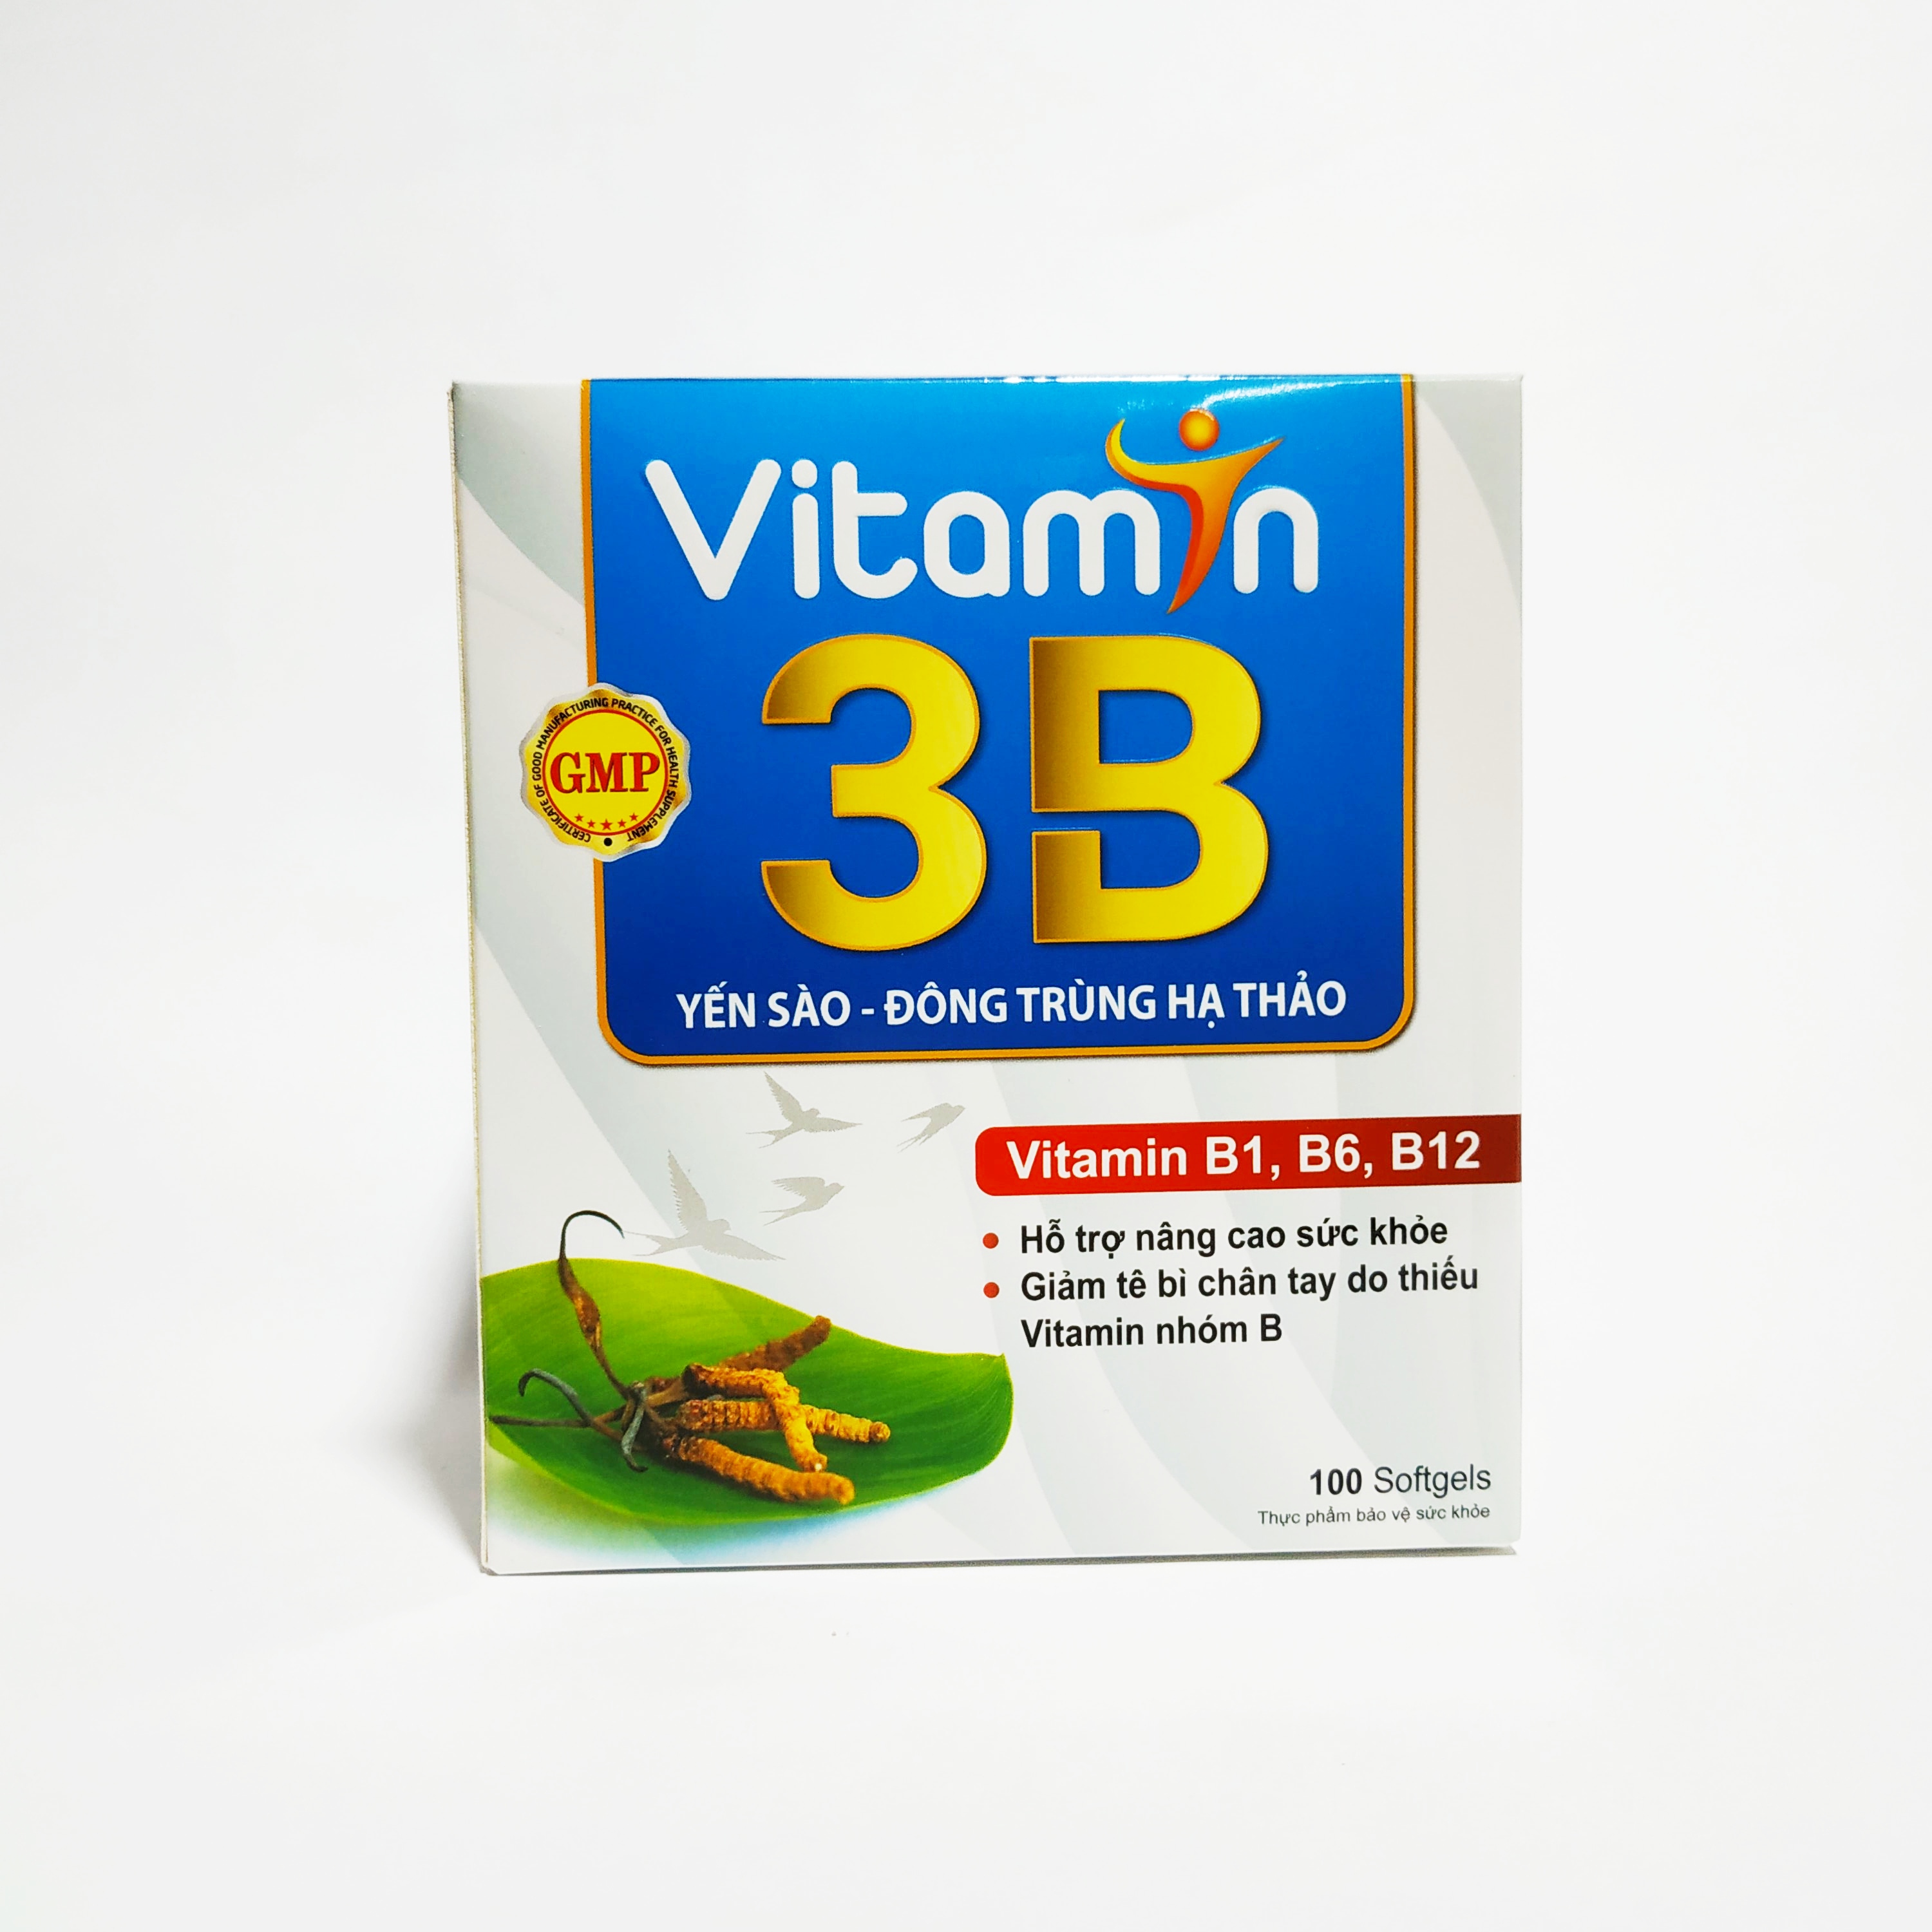 Vitamin 3B Yến Sào, Đông Trùng Hạ Thảo – Bổ Sung Các Vitamin Nhóm B – Giúp Ăn Ngon Ngủ Tốt – Giảm Đau Dây Thận Kinh – Hộp 100 Viên